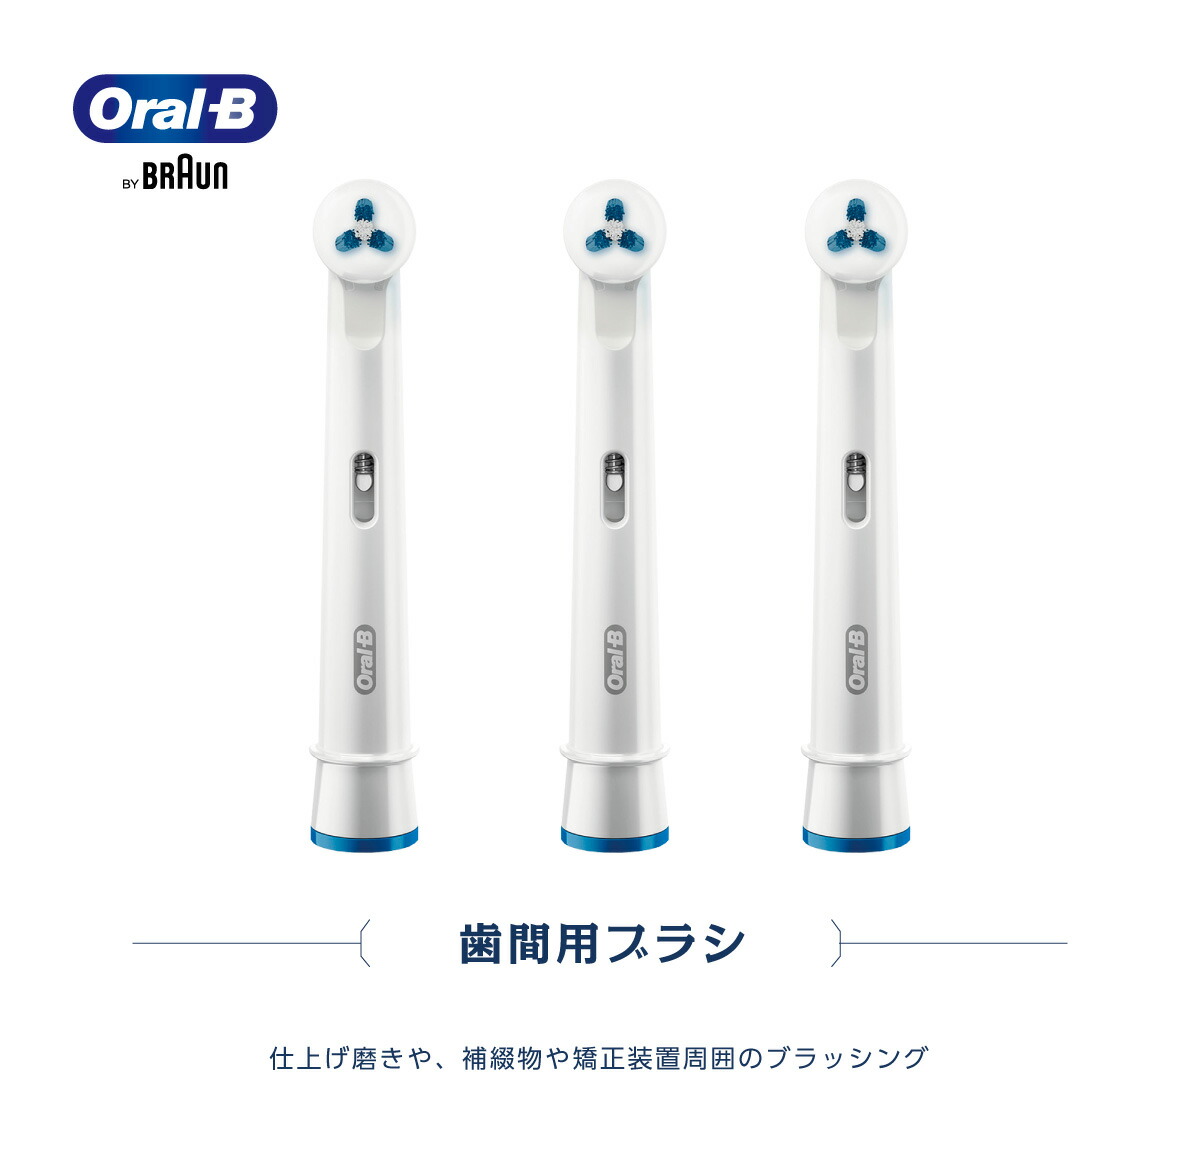 日本正規品 ブラウン OralB オーラルB 電動ブラシ 替えブラシ 歯間用ブラシ１本 メール便送料無料 純正品 はみがき  :27000014:アットイーハ - 通販 - Yahoo!ショッピング